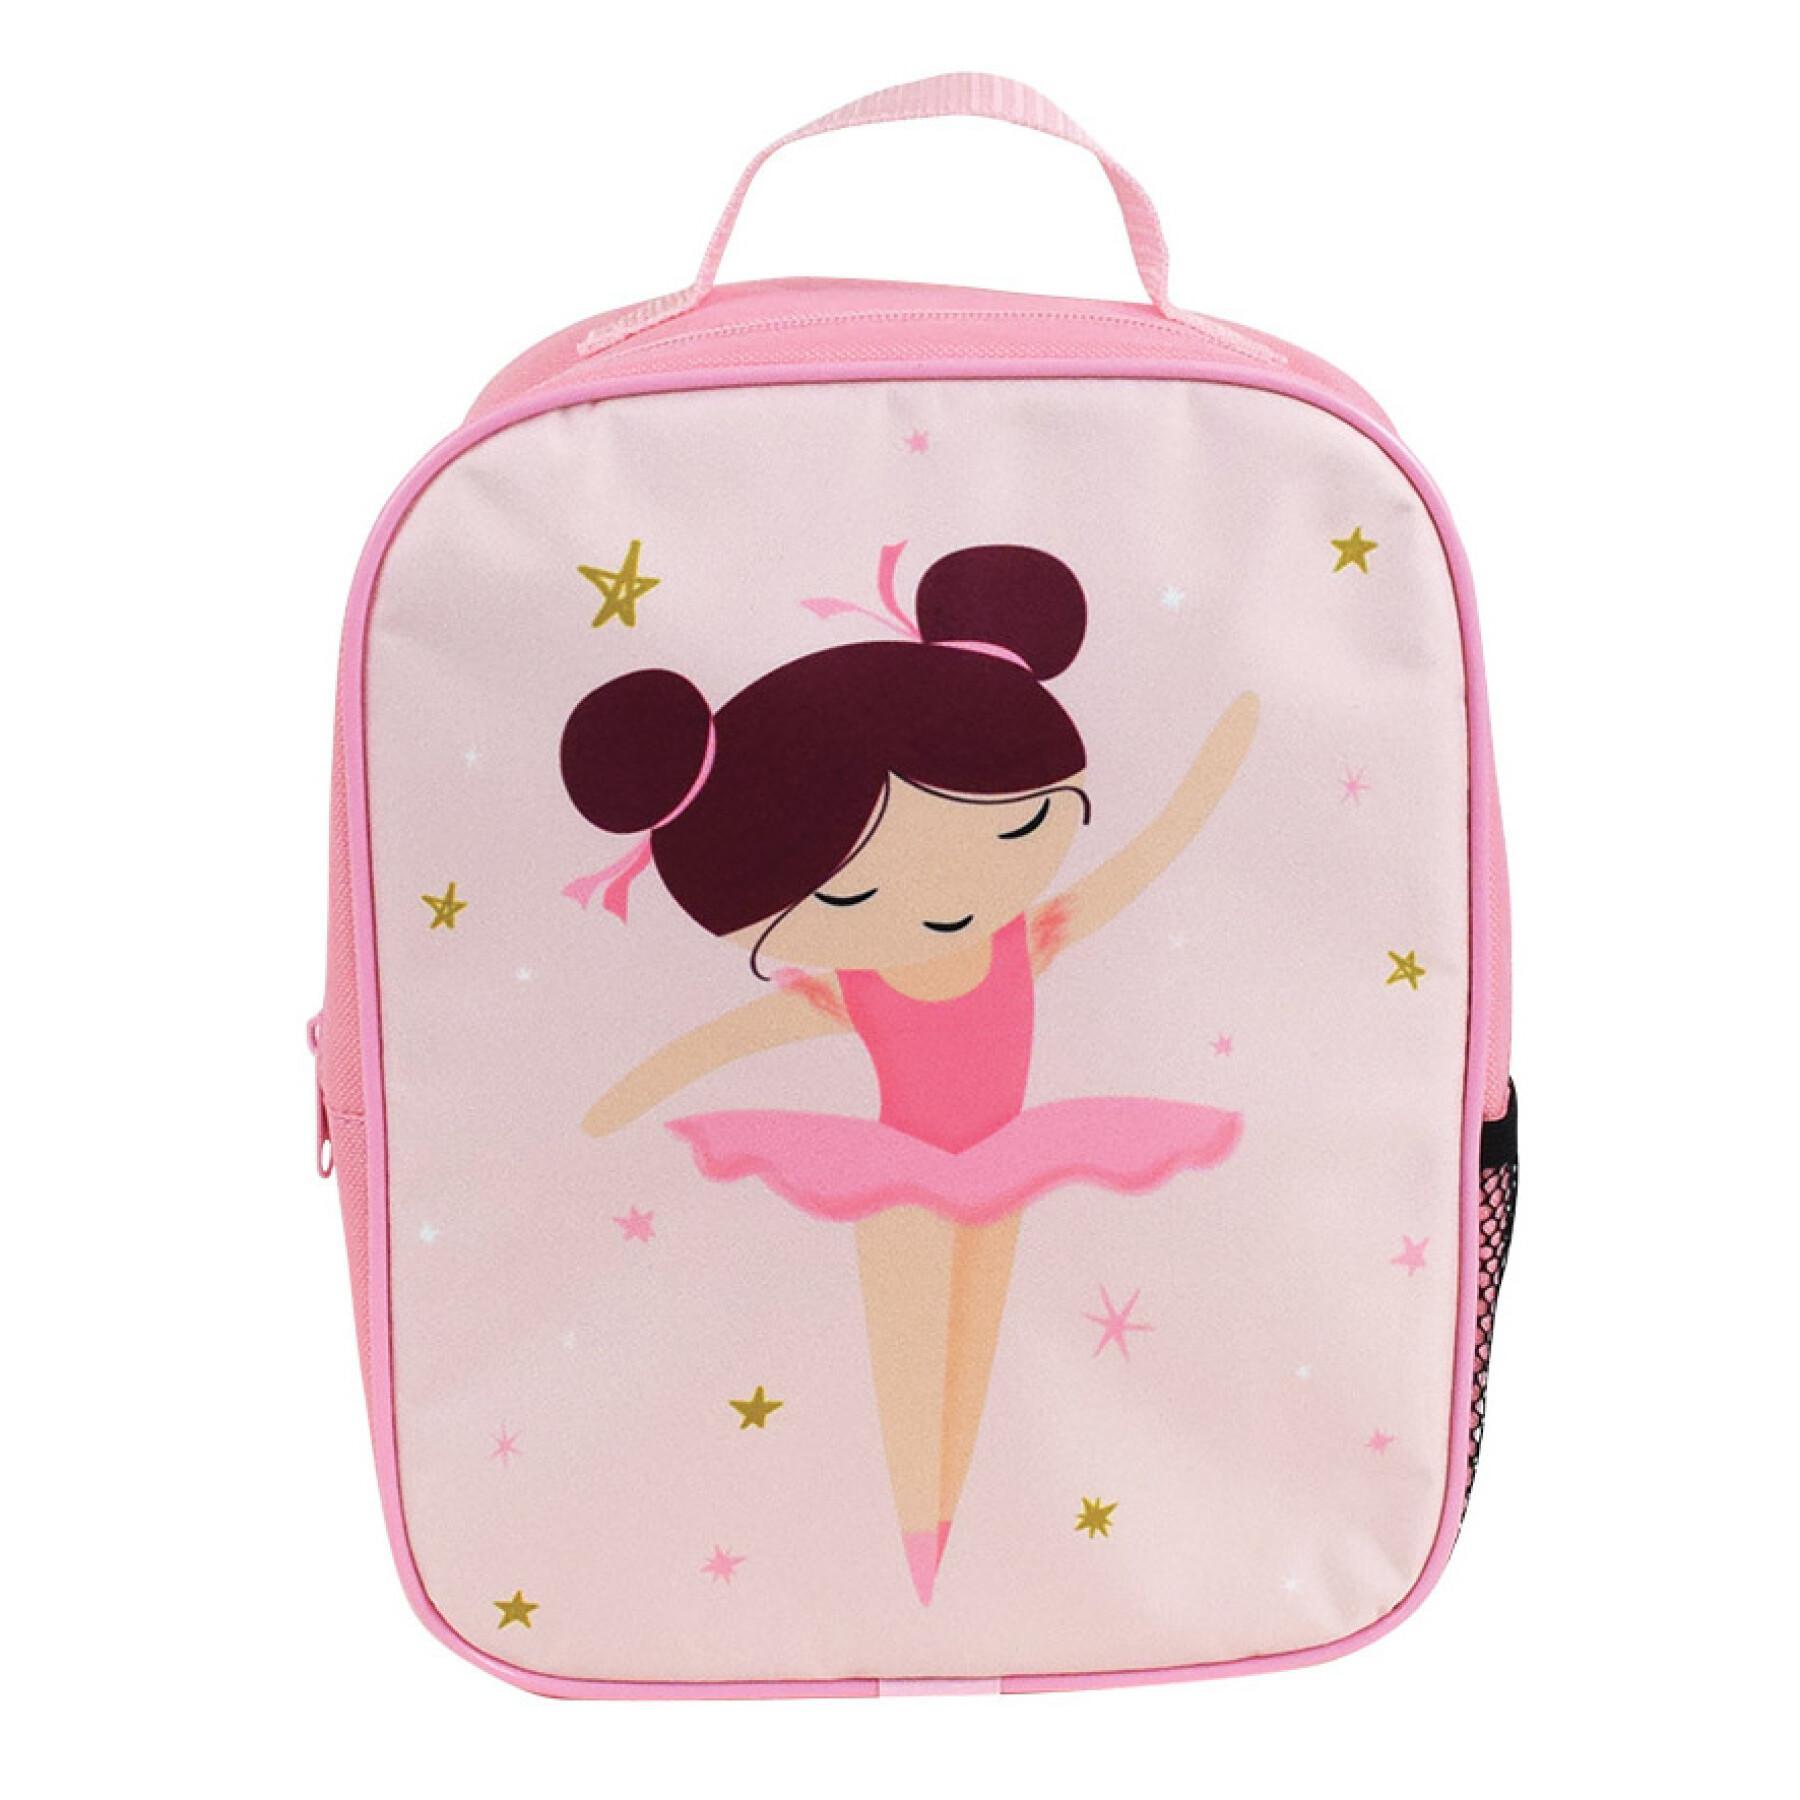 Children's insulated backpack Jemini Ballerine